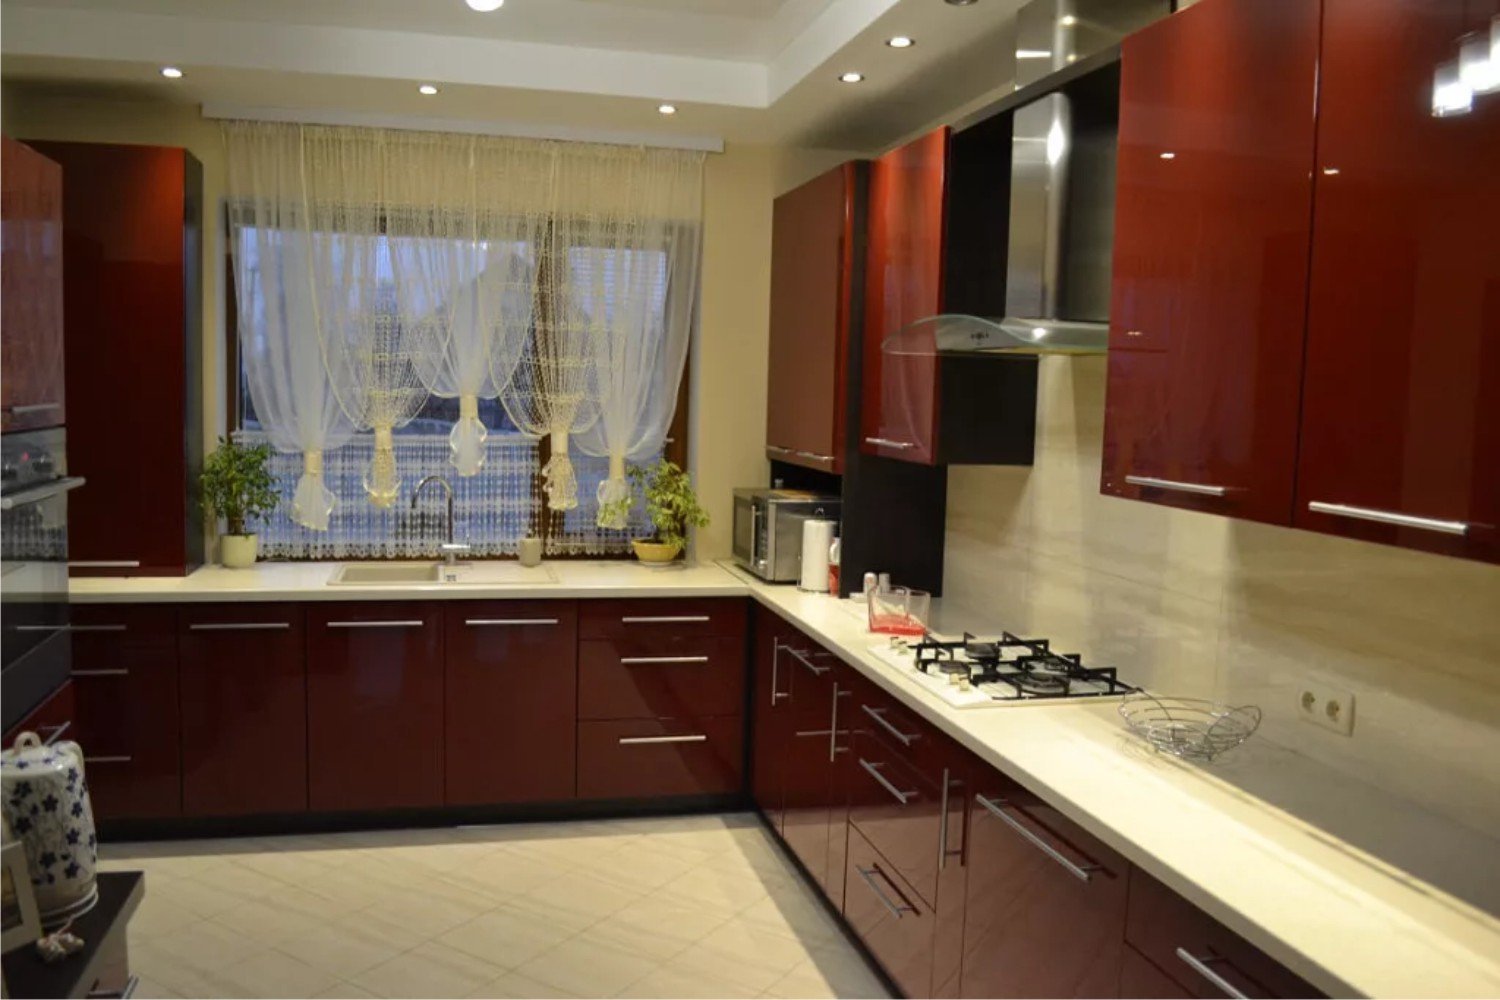 Купить кухонный гарнитур бордового цвета для маленькой кухни в Петрозаводске. Удобная прямая кухня.